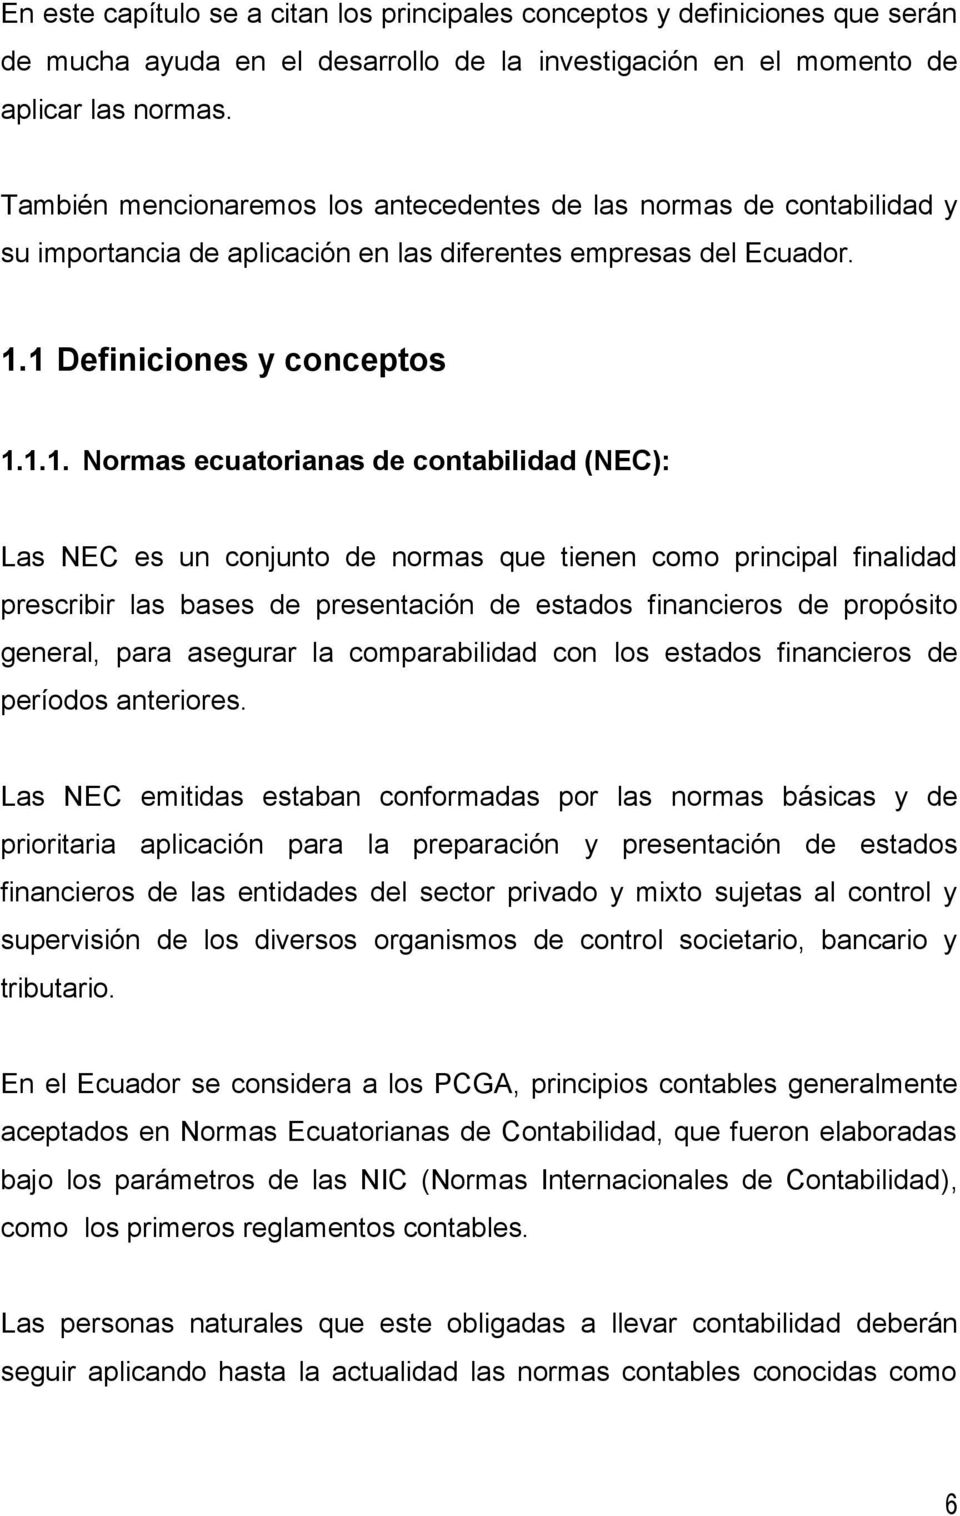 1 Definiciones y conceptos 1.1.1. Normas ecuatorianas de contabilidad (NEC): Las NEC es un conjunto de normas que tienen como principal finalidad prescribir las bases de presentación de estados